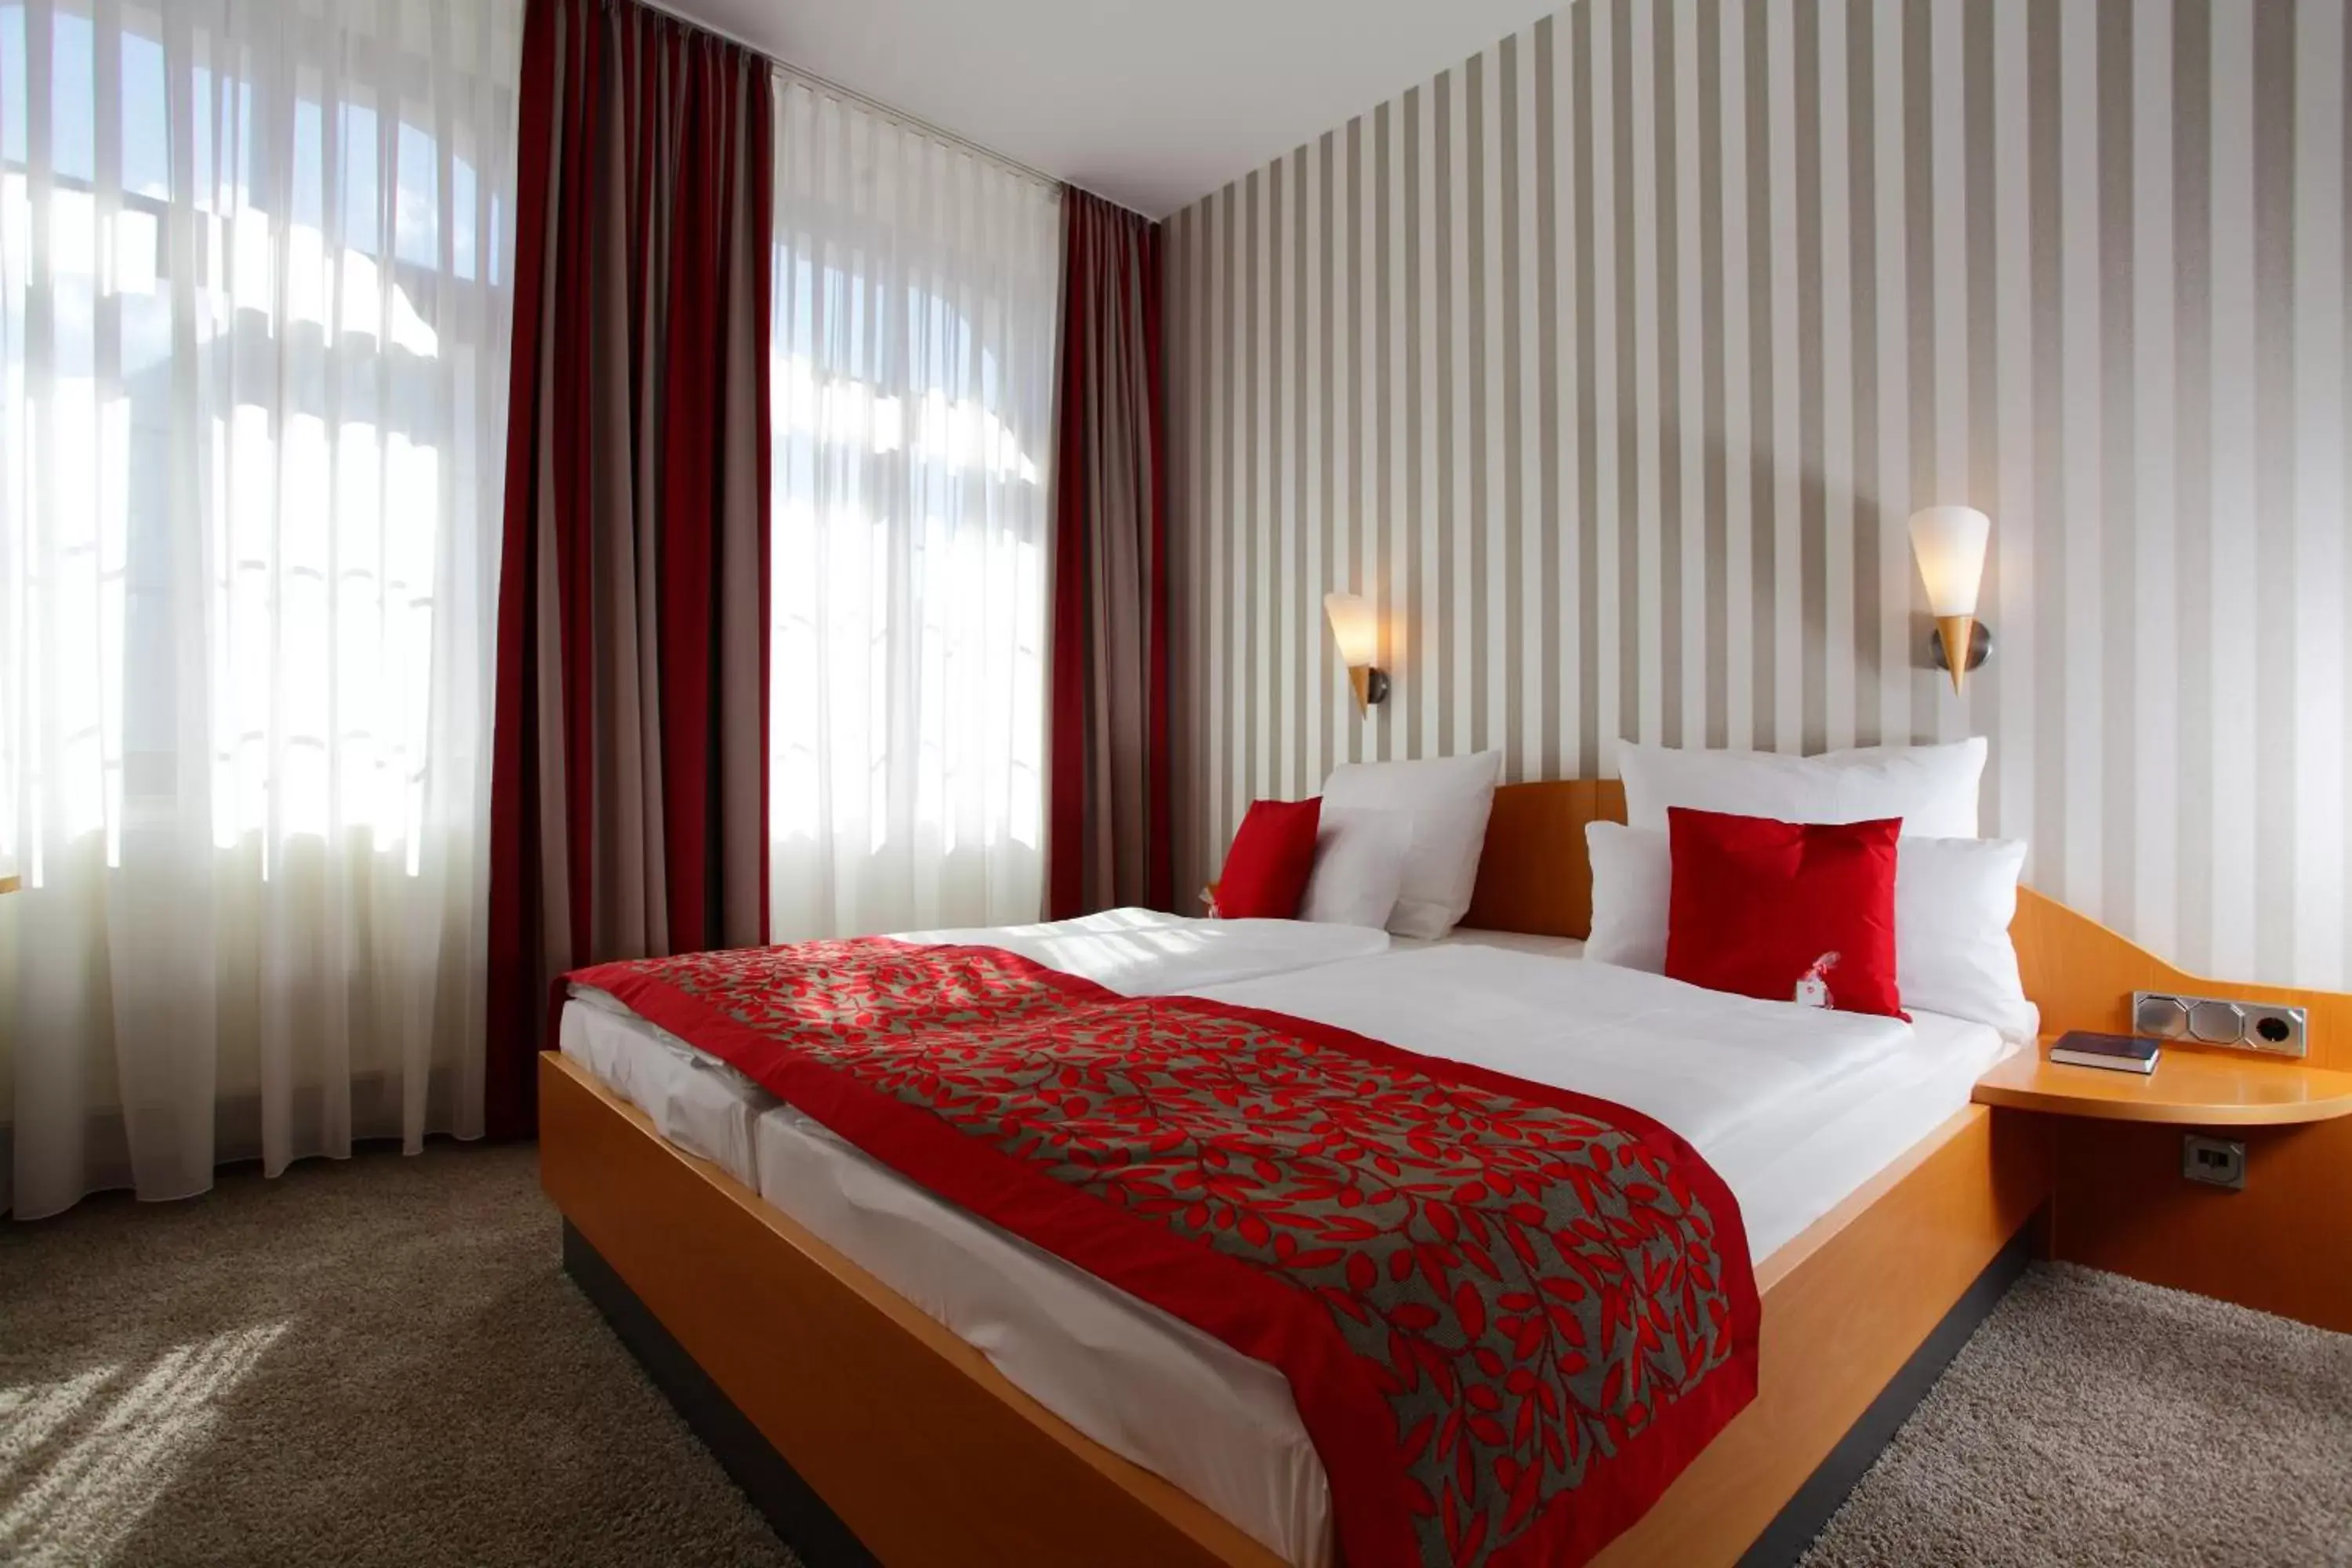 Bedroom, Room Photo in Hotel & Restaurant Michaelis